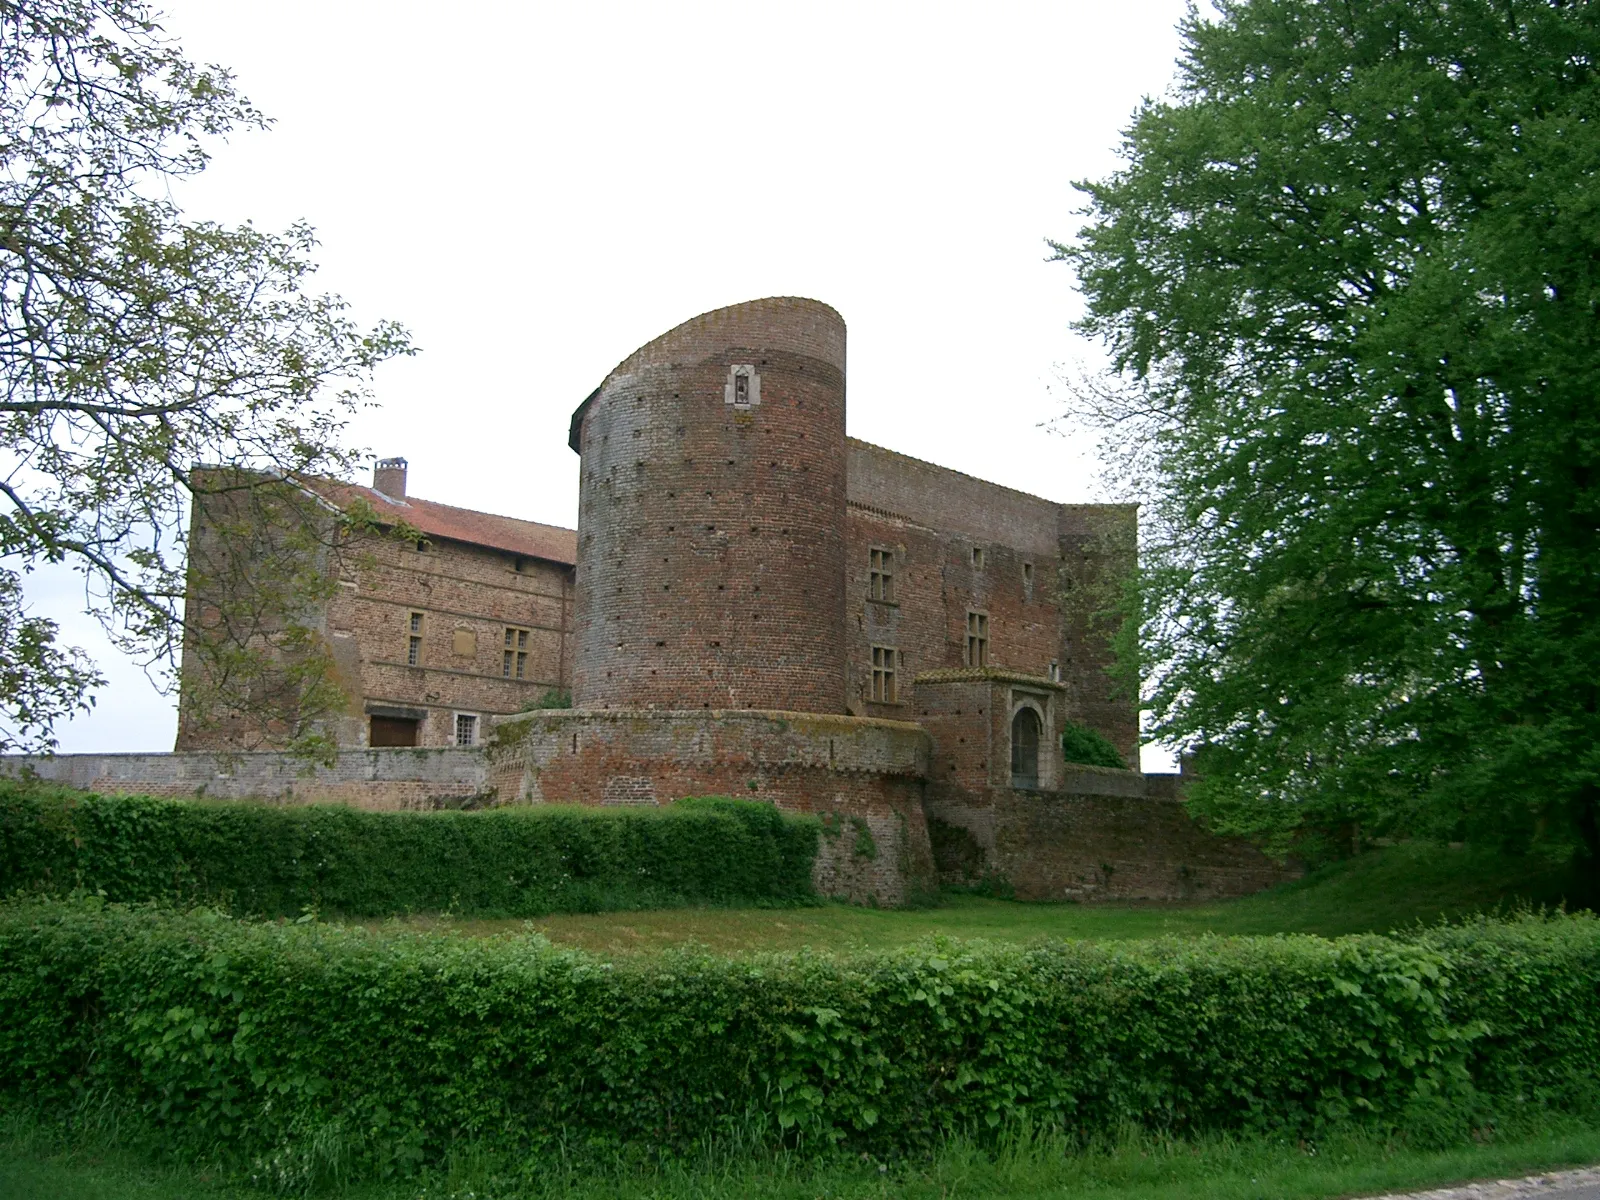 Photo showing: château de Bouligneux dans la Dombes (département de l'Ain - France) - château fortifié des XIVe - XVIIe siècles